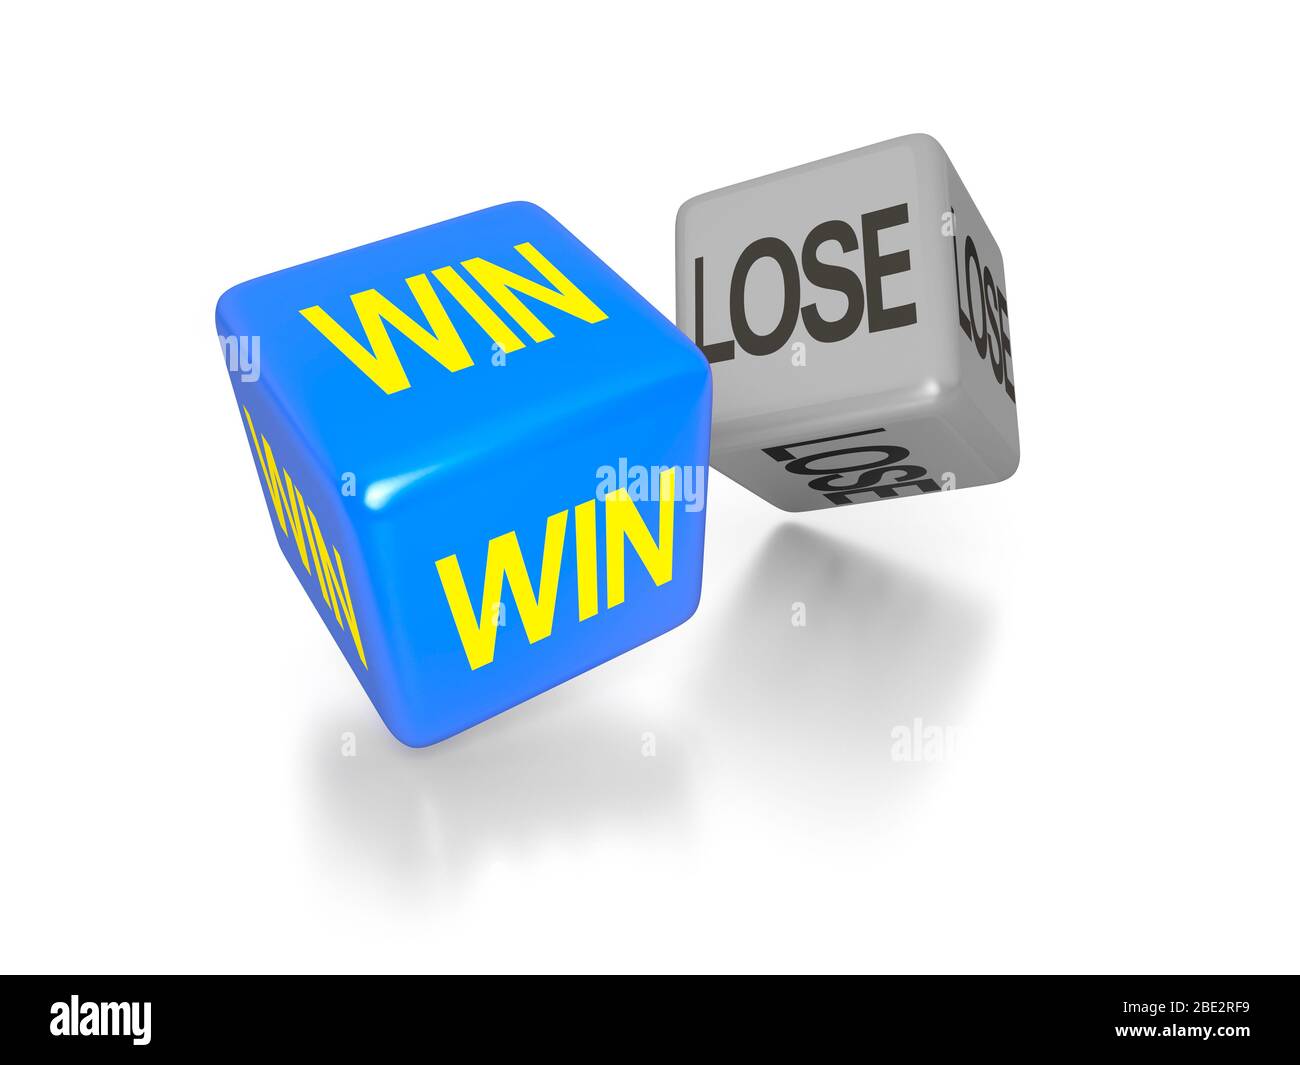 Zwei Wuerfel vor weissem Hintergrund, auf denen die Worte "Win" und "perdere" zu sehen sind. Foto Stock